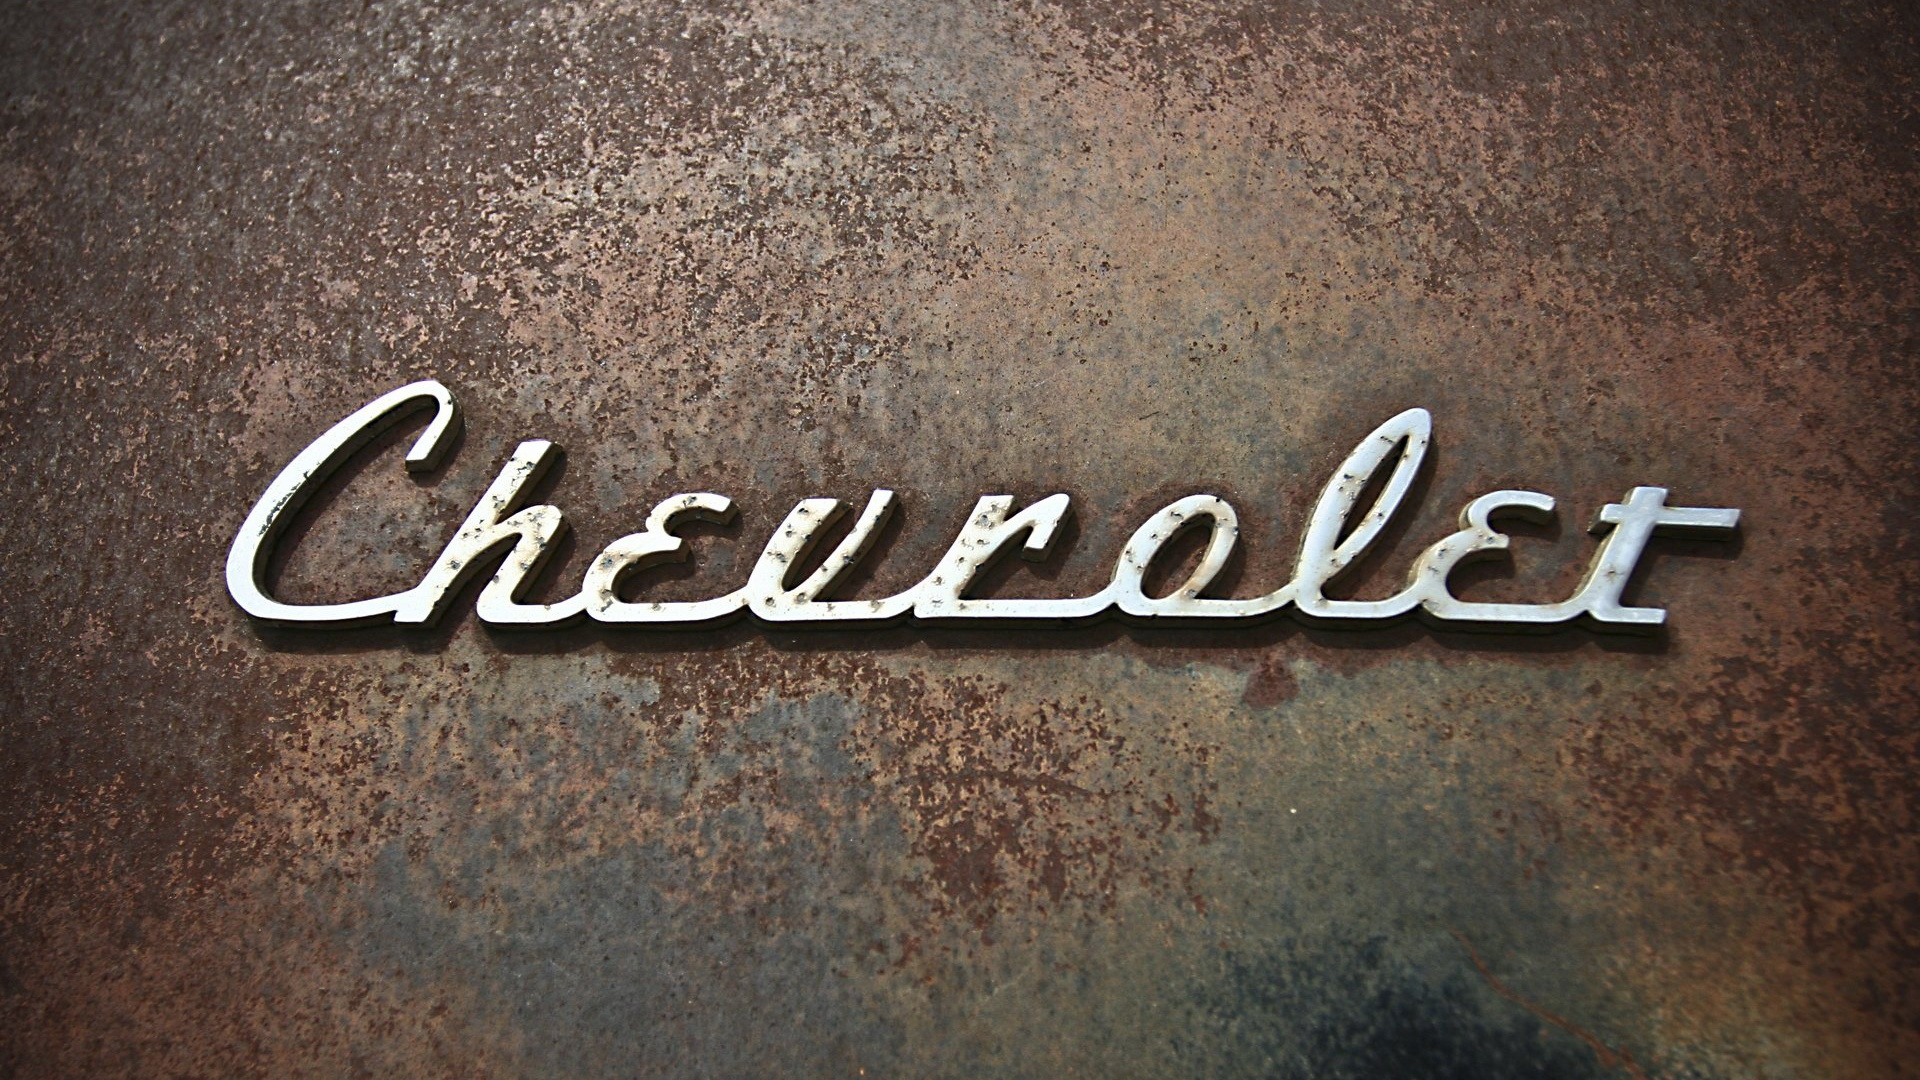 Chevrolet, Firmenzeichen, Text, Brand, Schriftart. Wallpaper in 1920x1080 Resolution